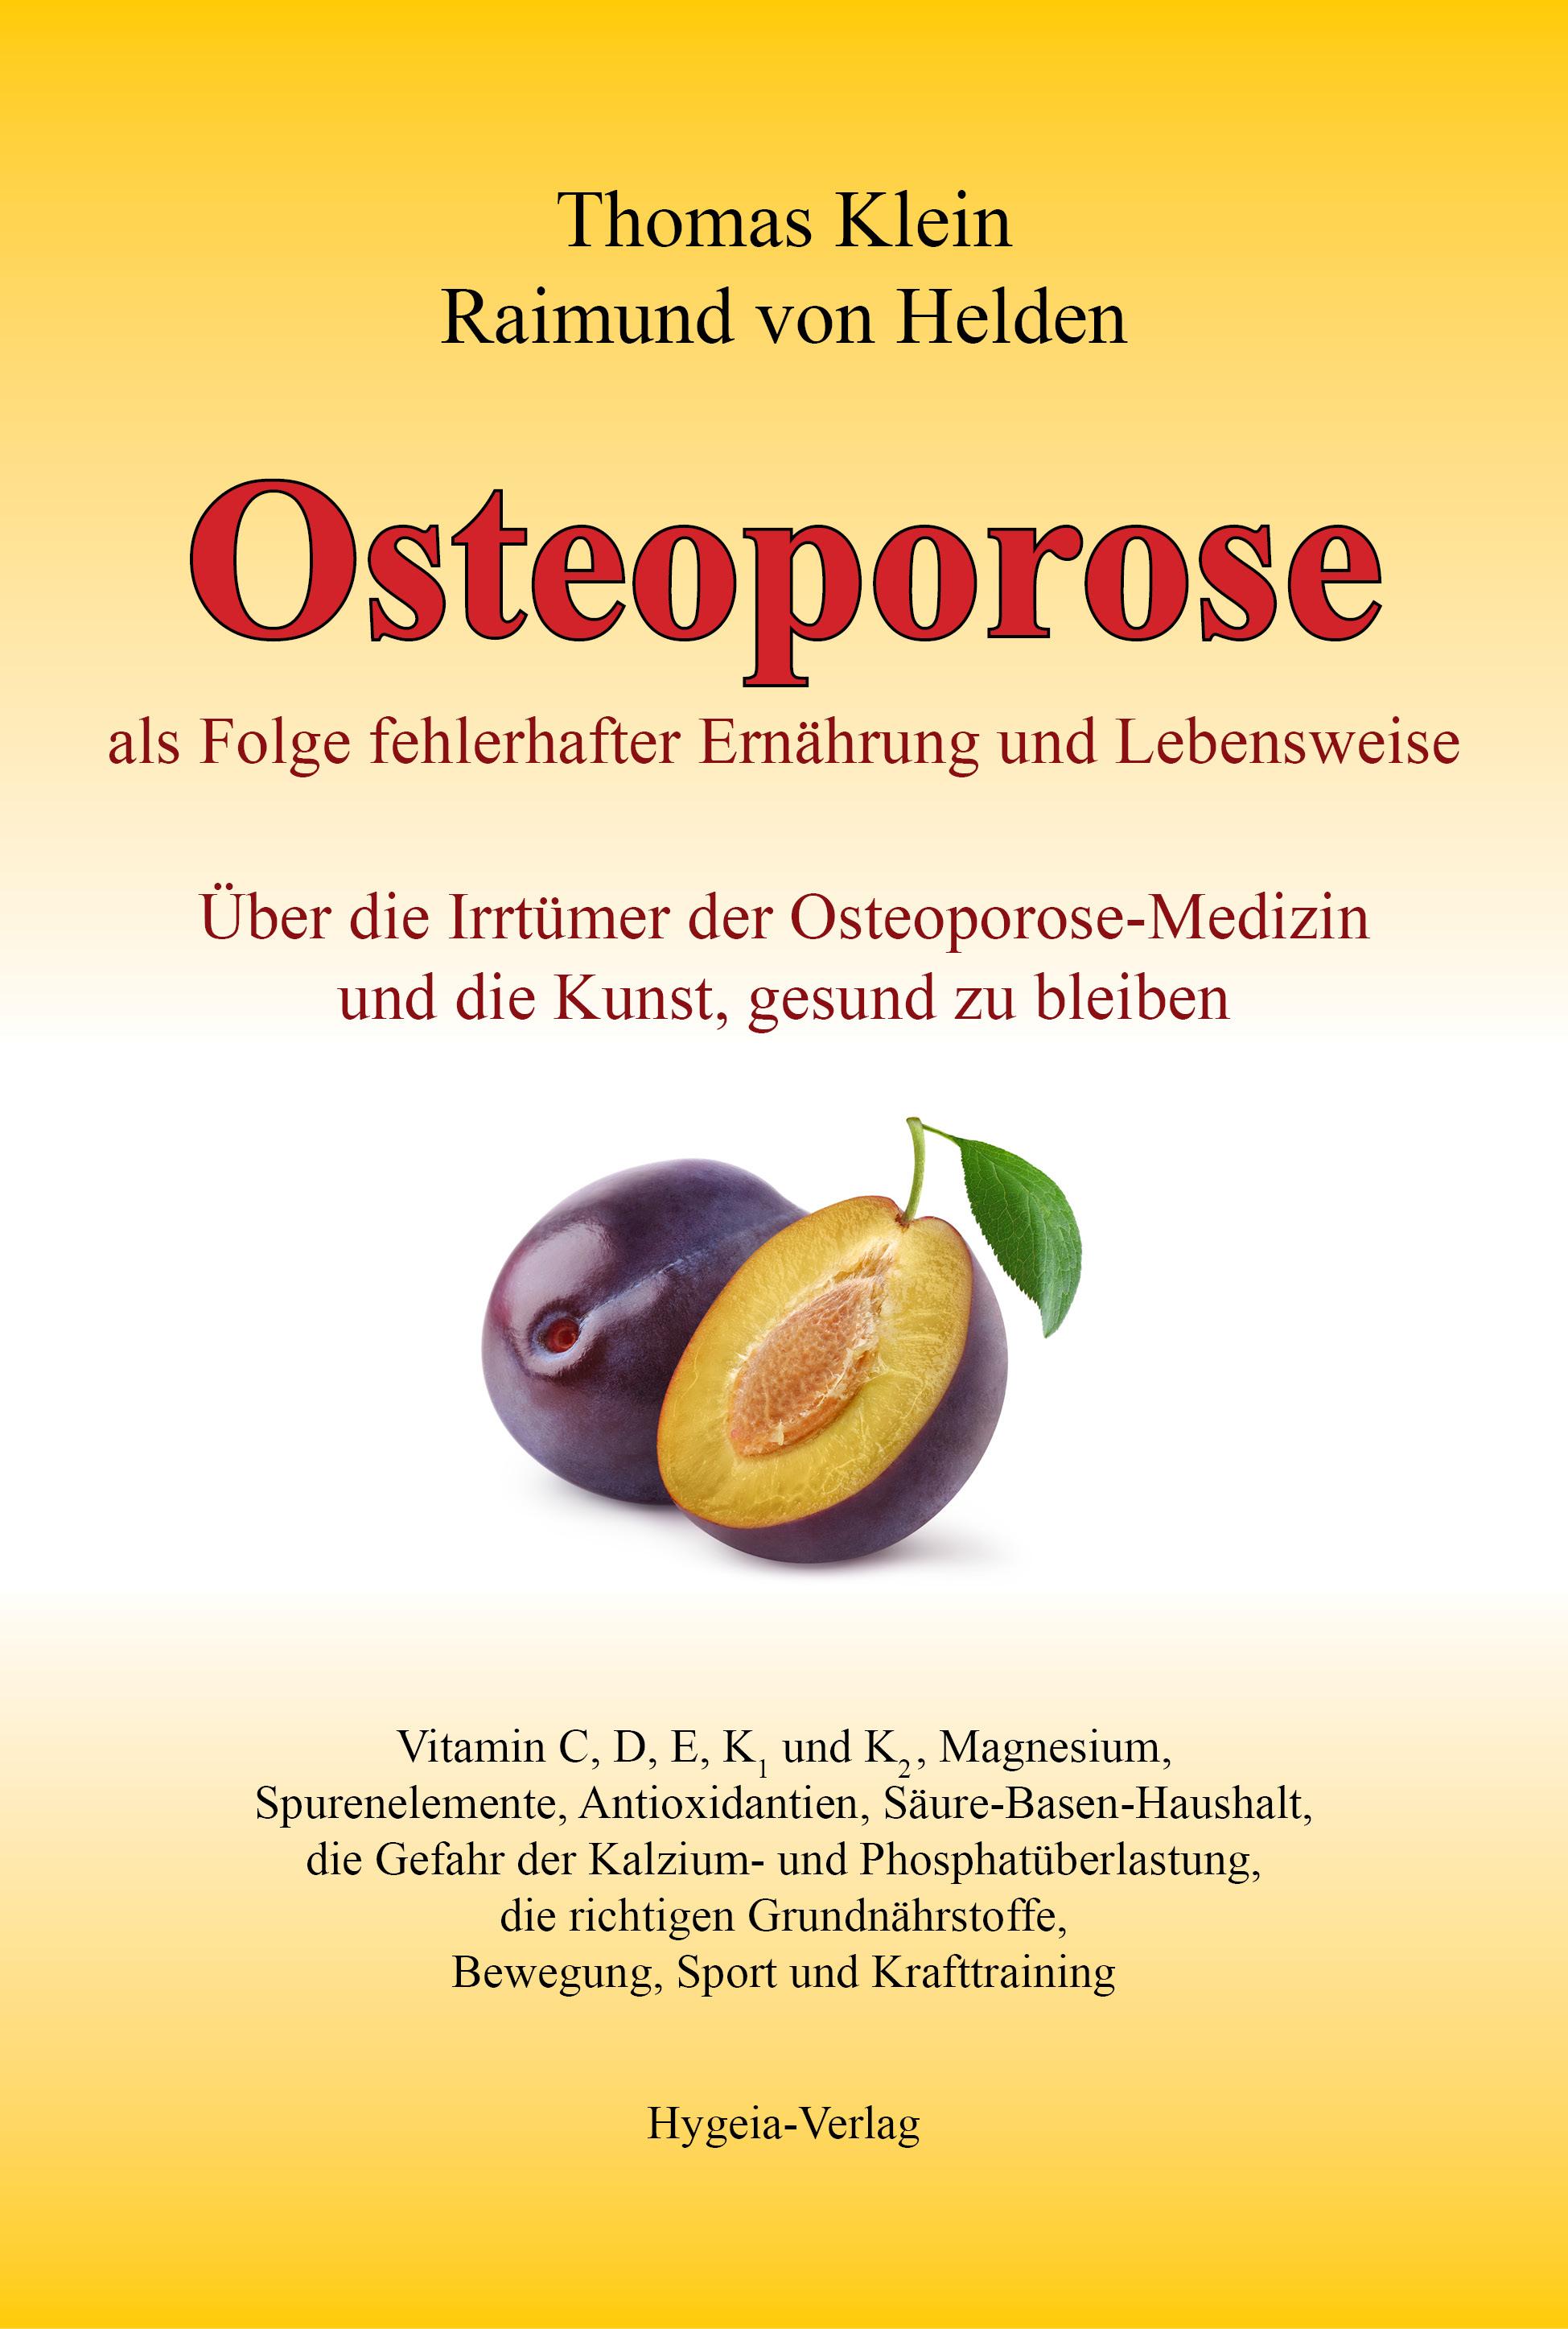 Osteoporose als Folge fehlerhafter Ernährung und Lebensweise Über die Irrtümer der Osteoporose-Medizin und die Kunst, gesund zu bleiben